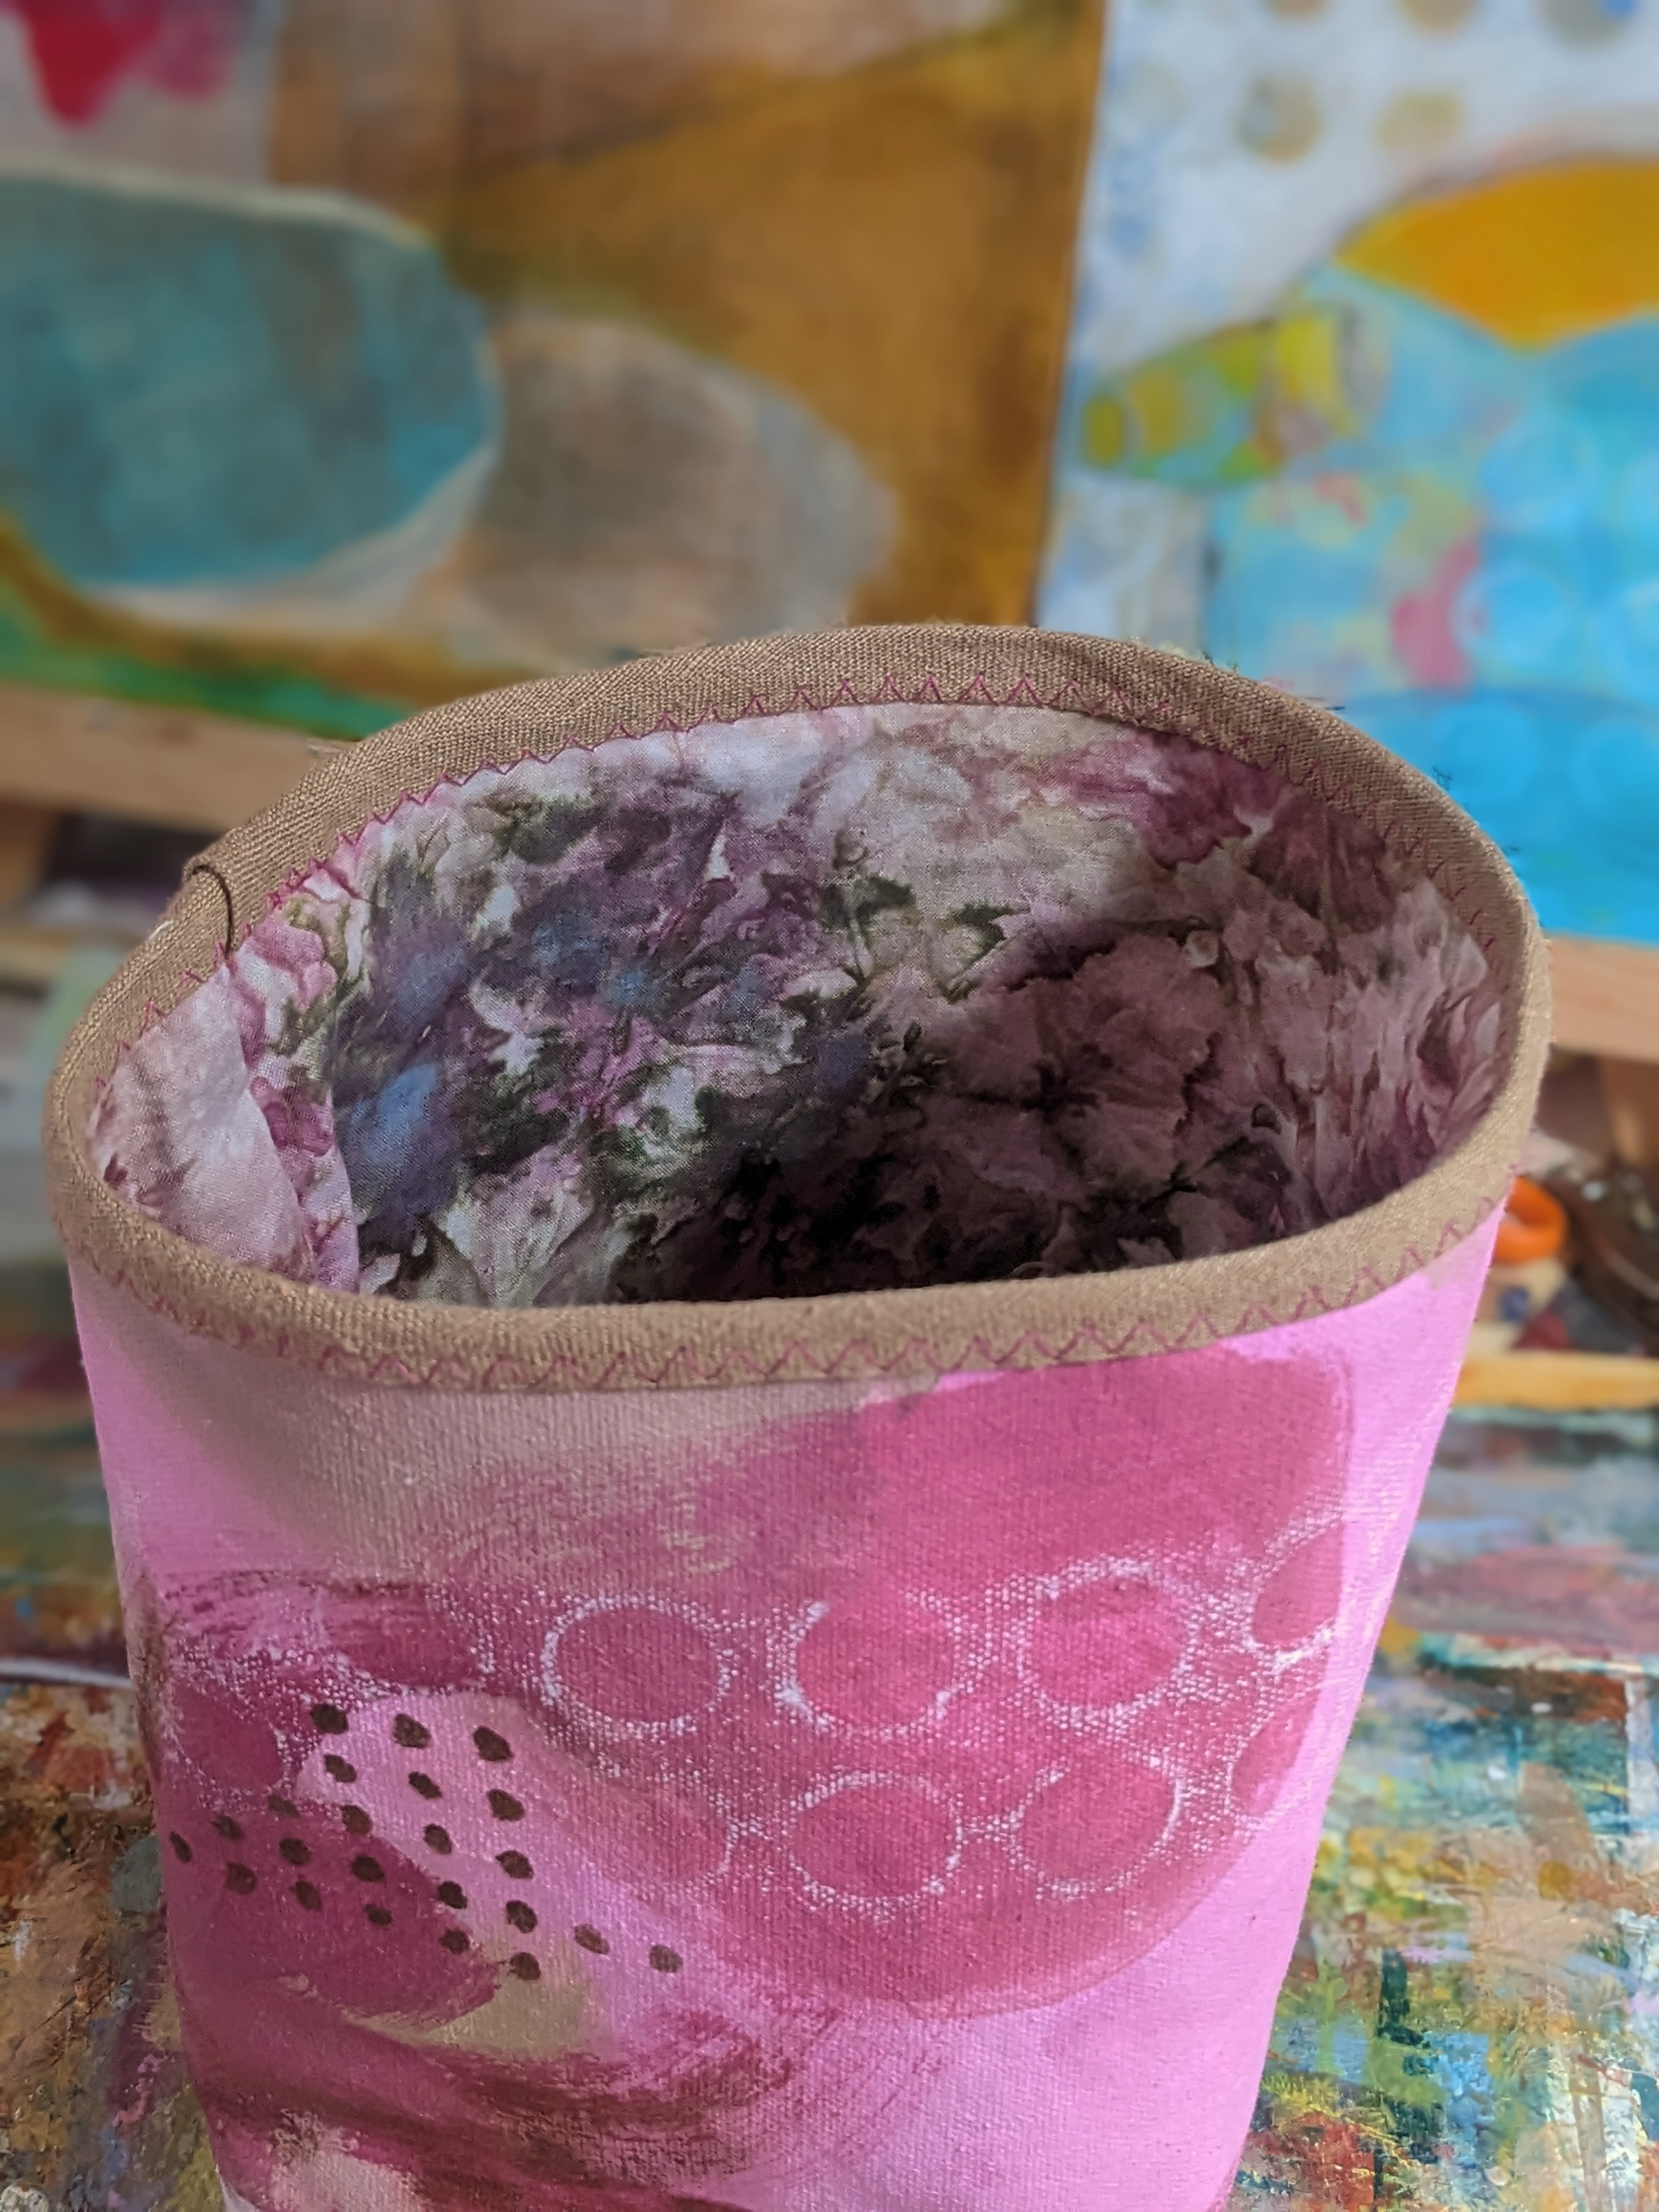 secret lentil handmade canvas basket